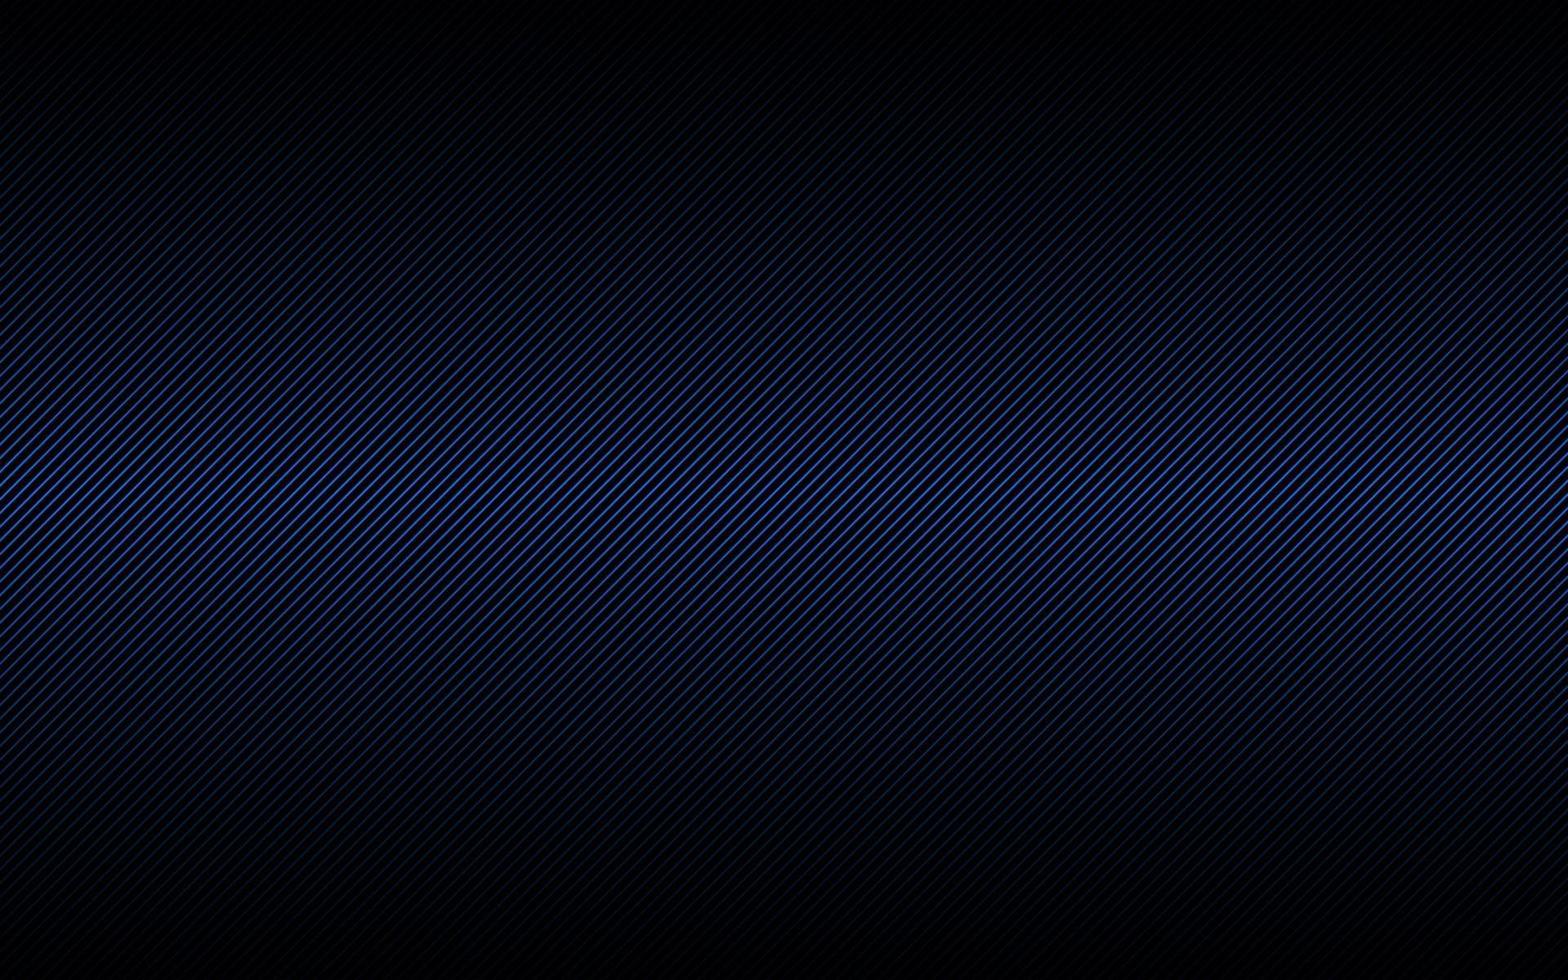 Fondo abstracto oscuro con líneas inclinadas azules y negras. patrón de rayas. líneas y franjas paralelas. fibra diagonal. ilustración vectorial vector